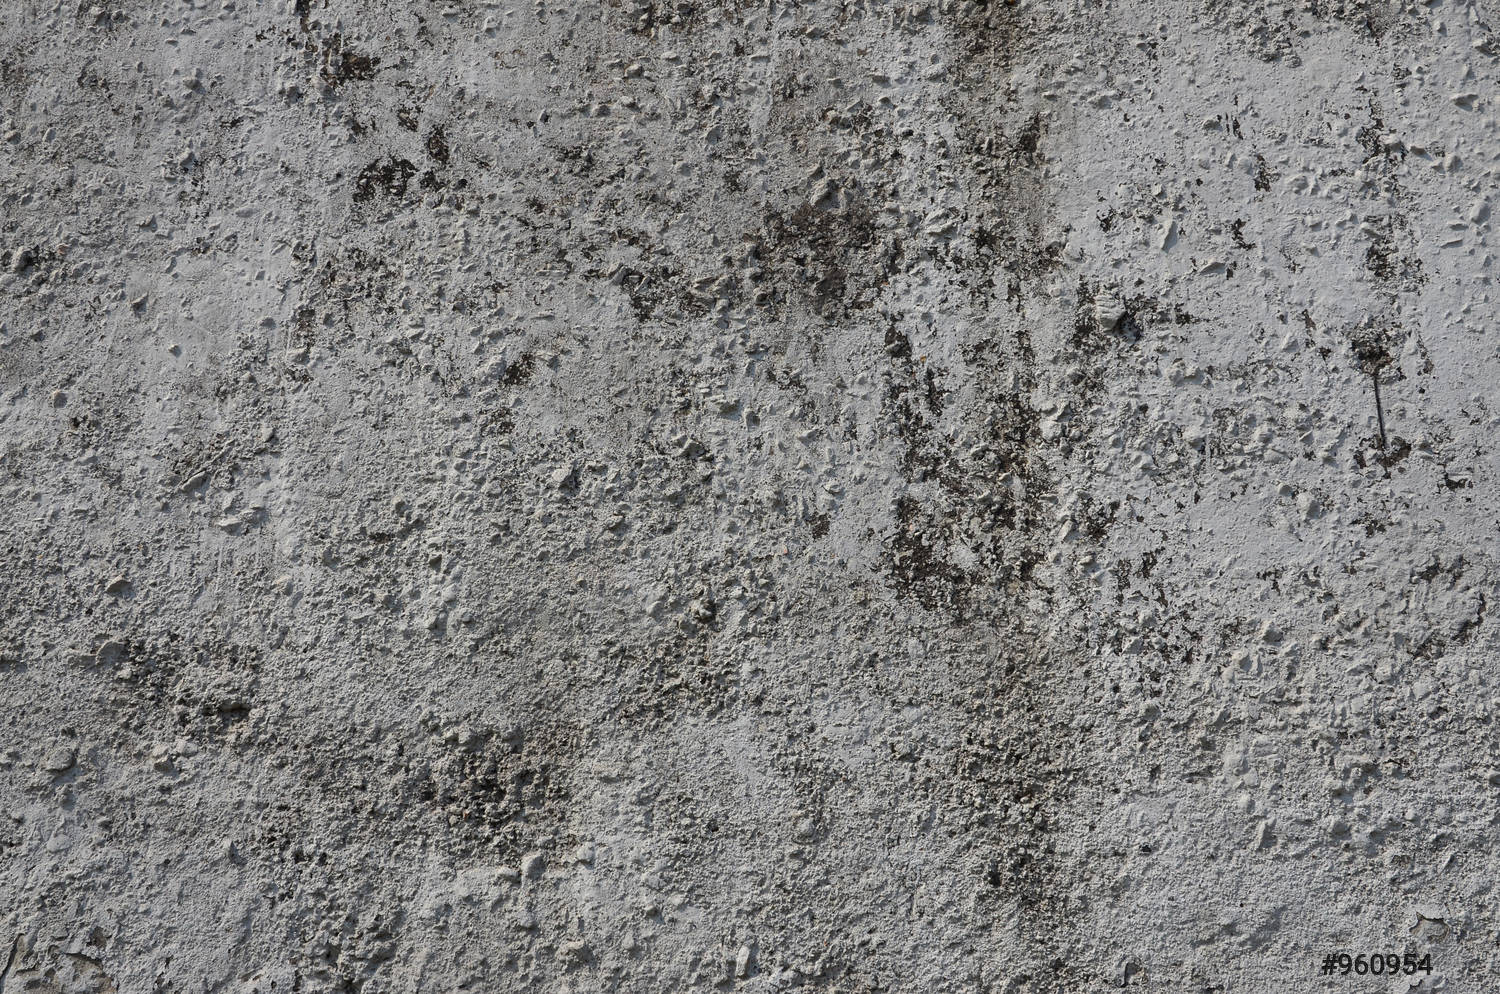  Beton Hintergrundbild 1500x994. Textur der alten Betonwand in grauem Hintergrundbild eines Betonproduktes vorrätig 960954